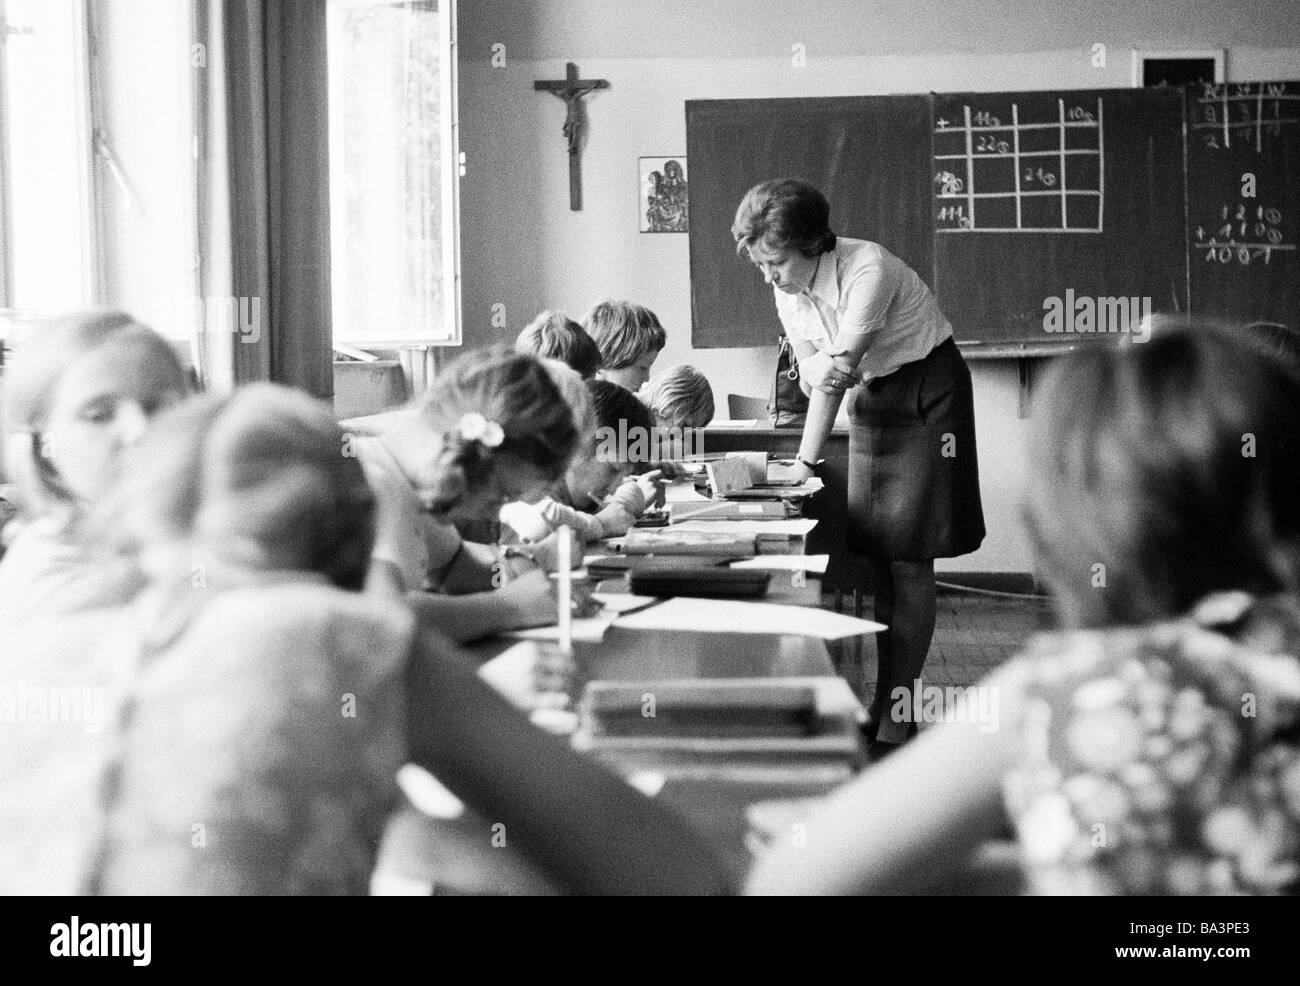 Negli anni settanta, foto in bianco e nero, di edificazione, scuola, scolari e studentesse in una scuola di classe durante le lezioni, insegnante di donna, i bambini di età compresa tra i 7 e i 10 anni Foto Stock